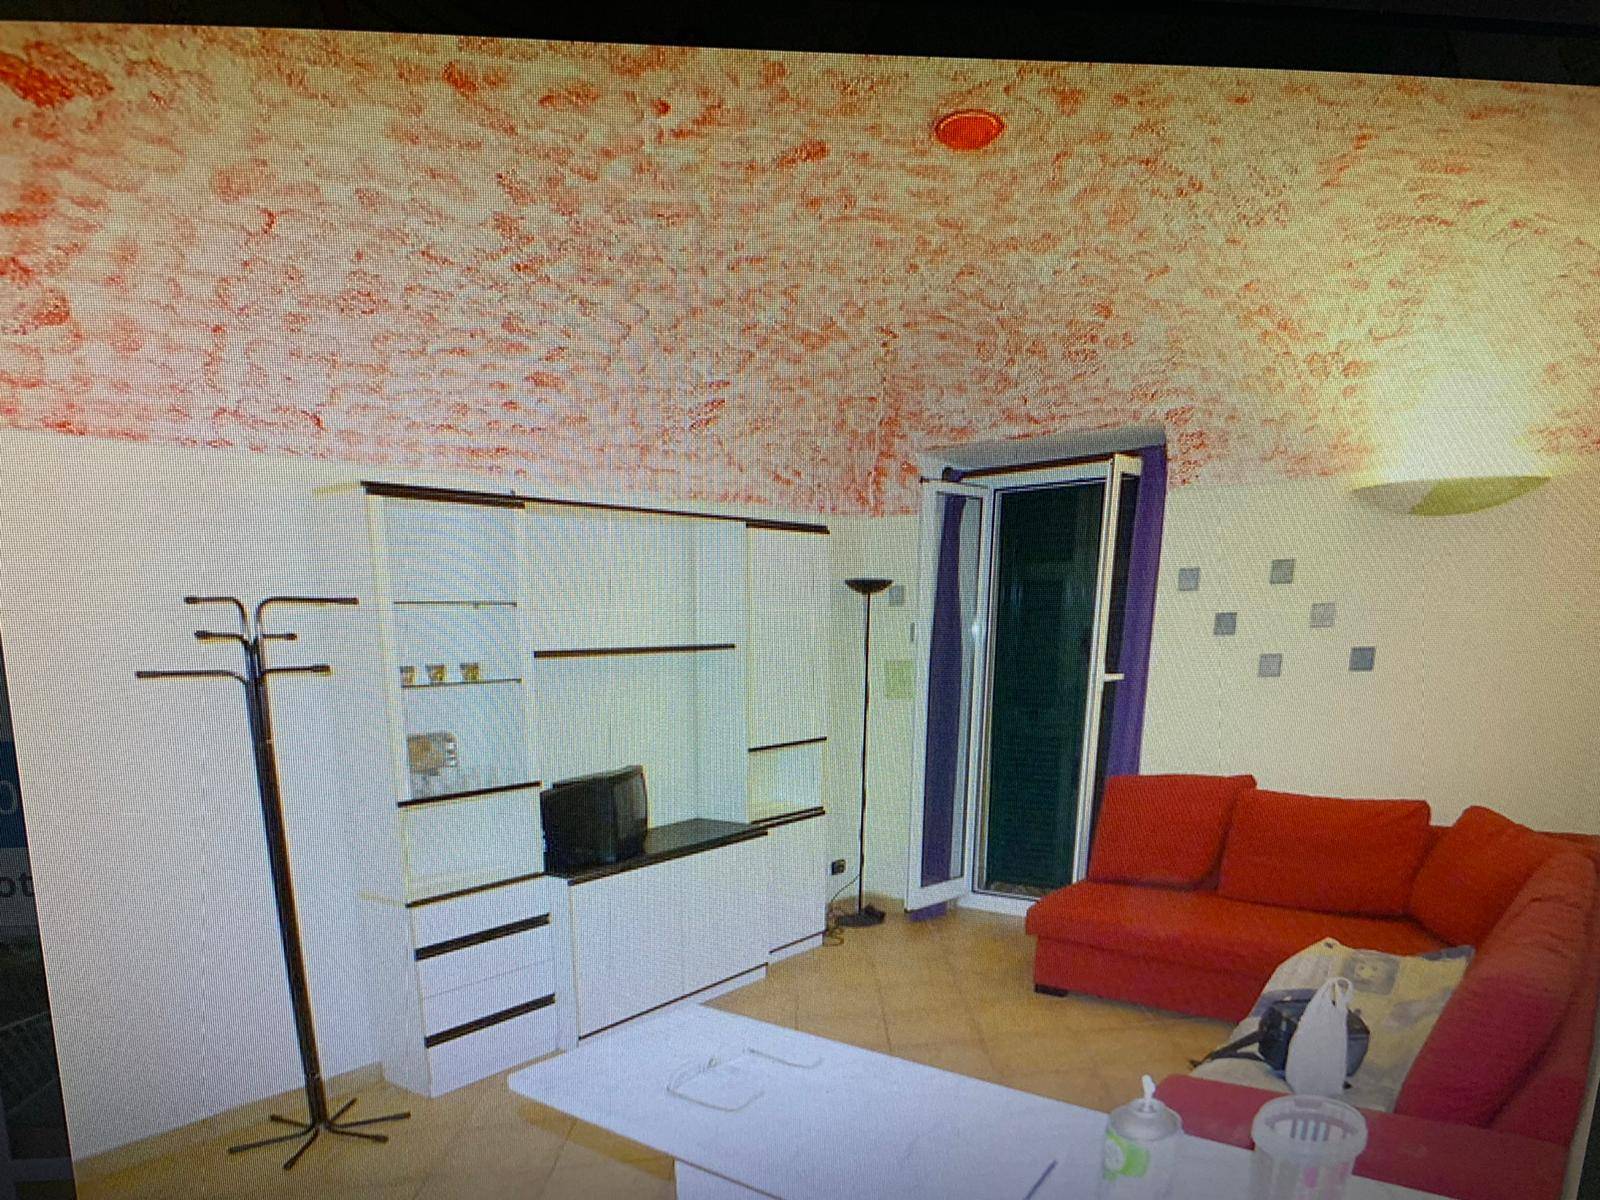 Appartamento in vendita a Altare, 4 locali, prezzo € 60.000 | CambioCasa.it